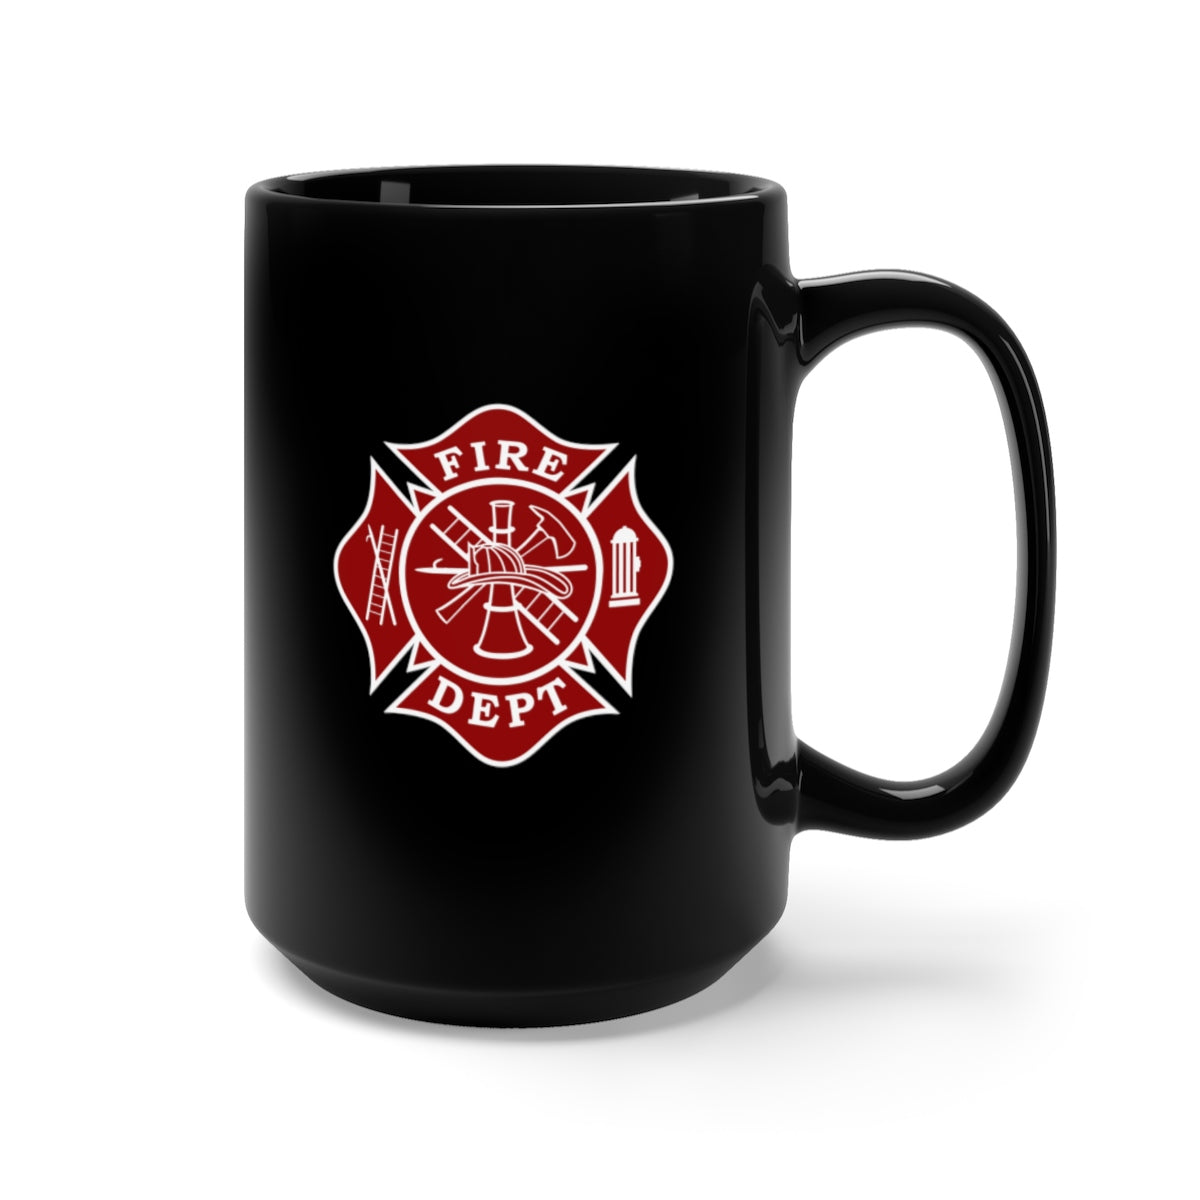 Firefighter Black Mug 15oz - firestationstore.com